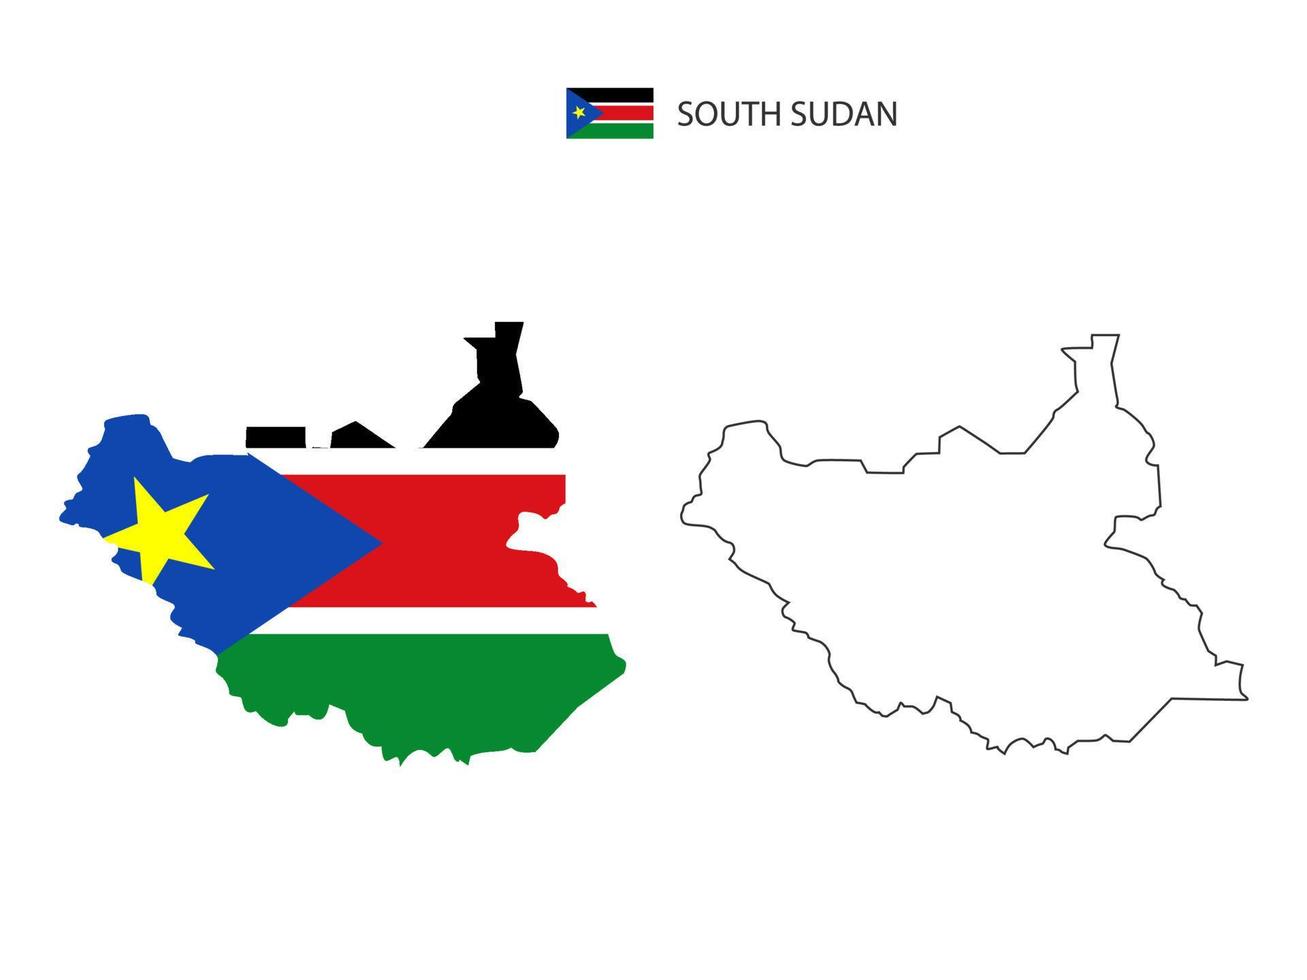 vector de ciudad de mapa de sudán del sur dividido por estilo de simplicidad de contorno. tiene 2 versiones, versión de línea delgada negra y versión de color de bandera de país. ambos mapas estaban en el fondo blanco.